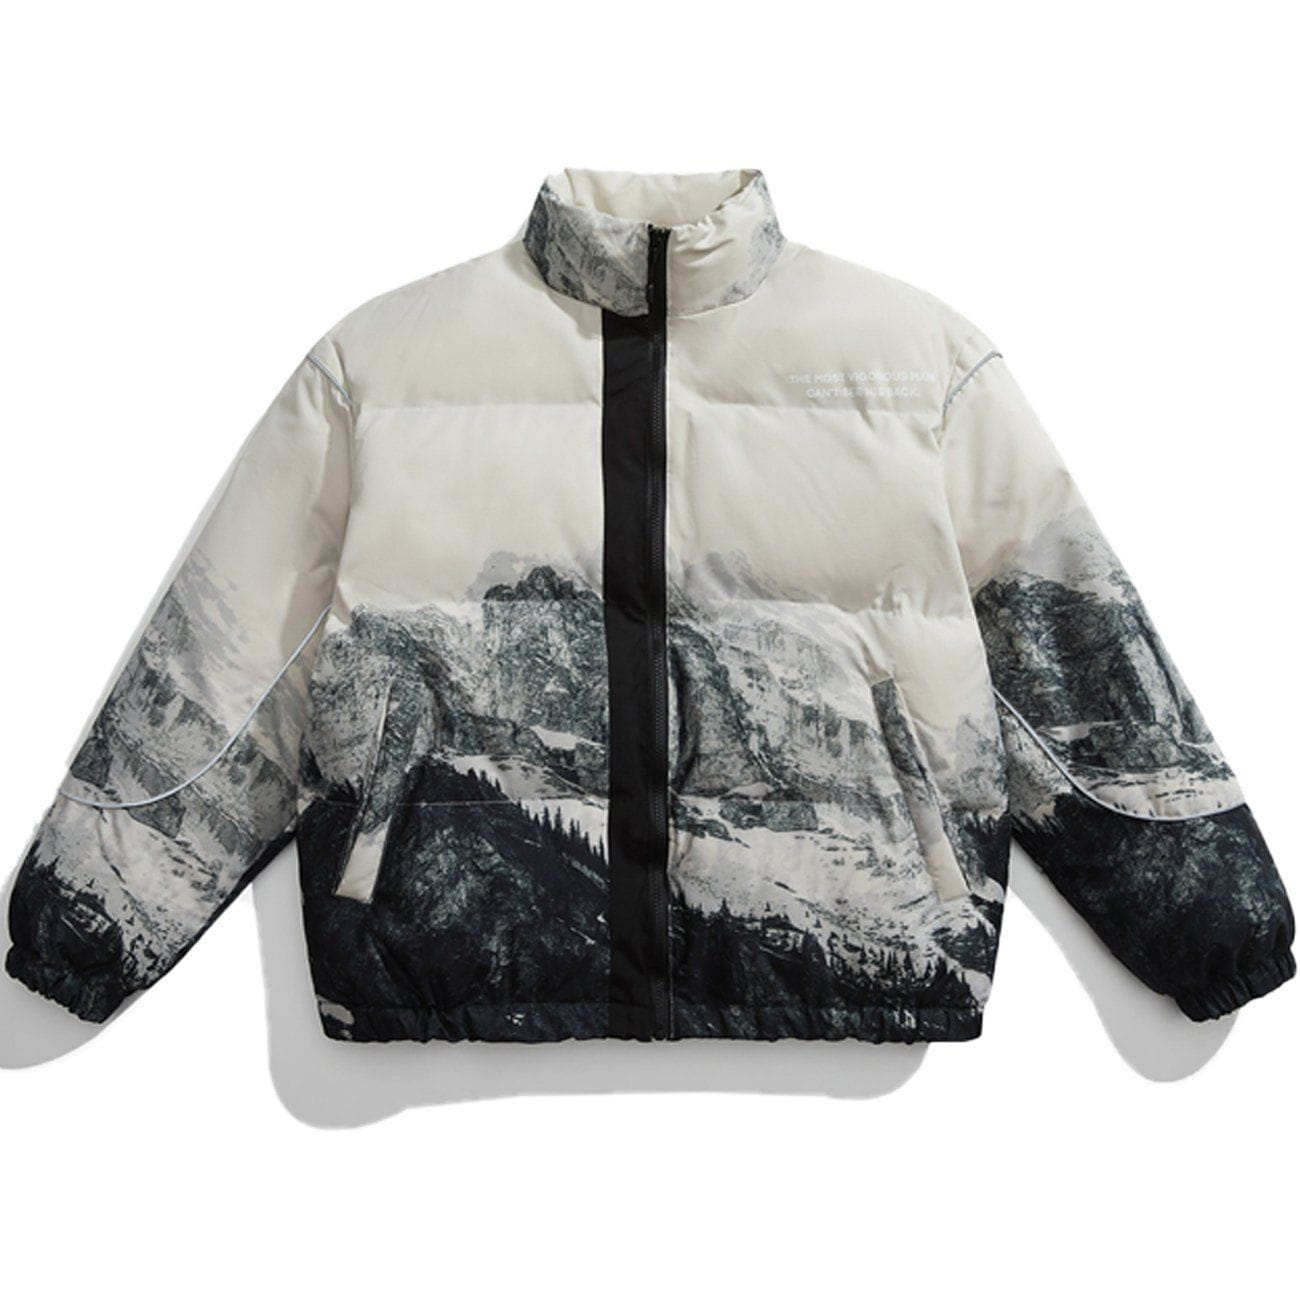 Eprezzy® - Snow Mountain Print Winter Coat streetwear fashion outfit ideas